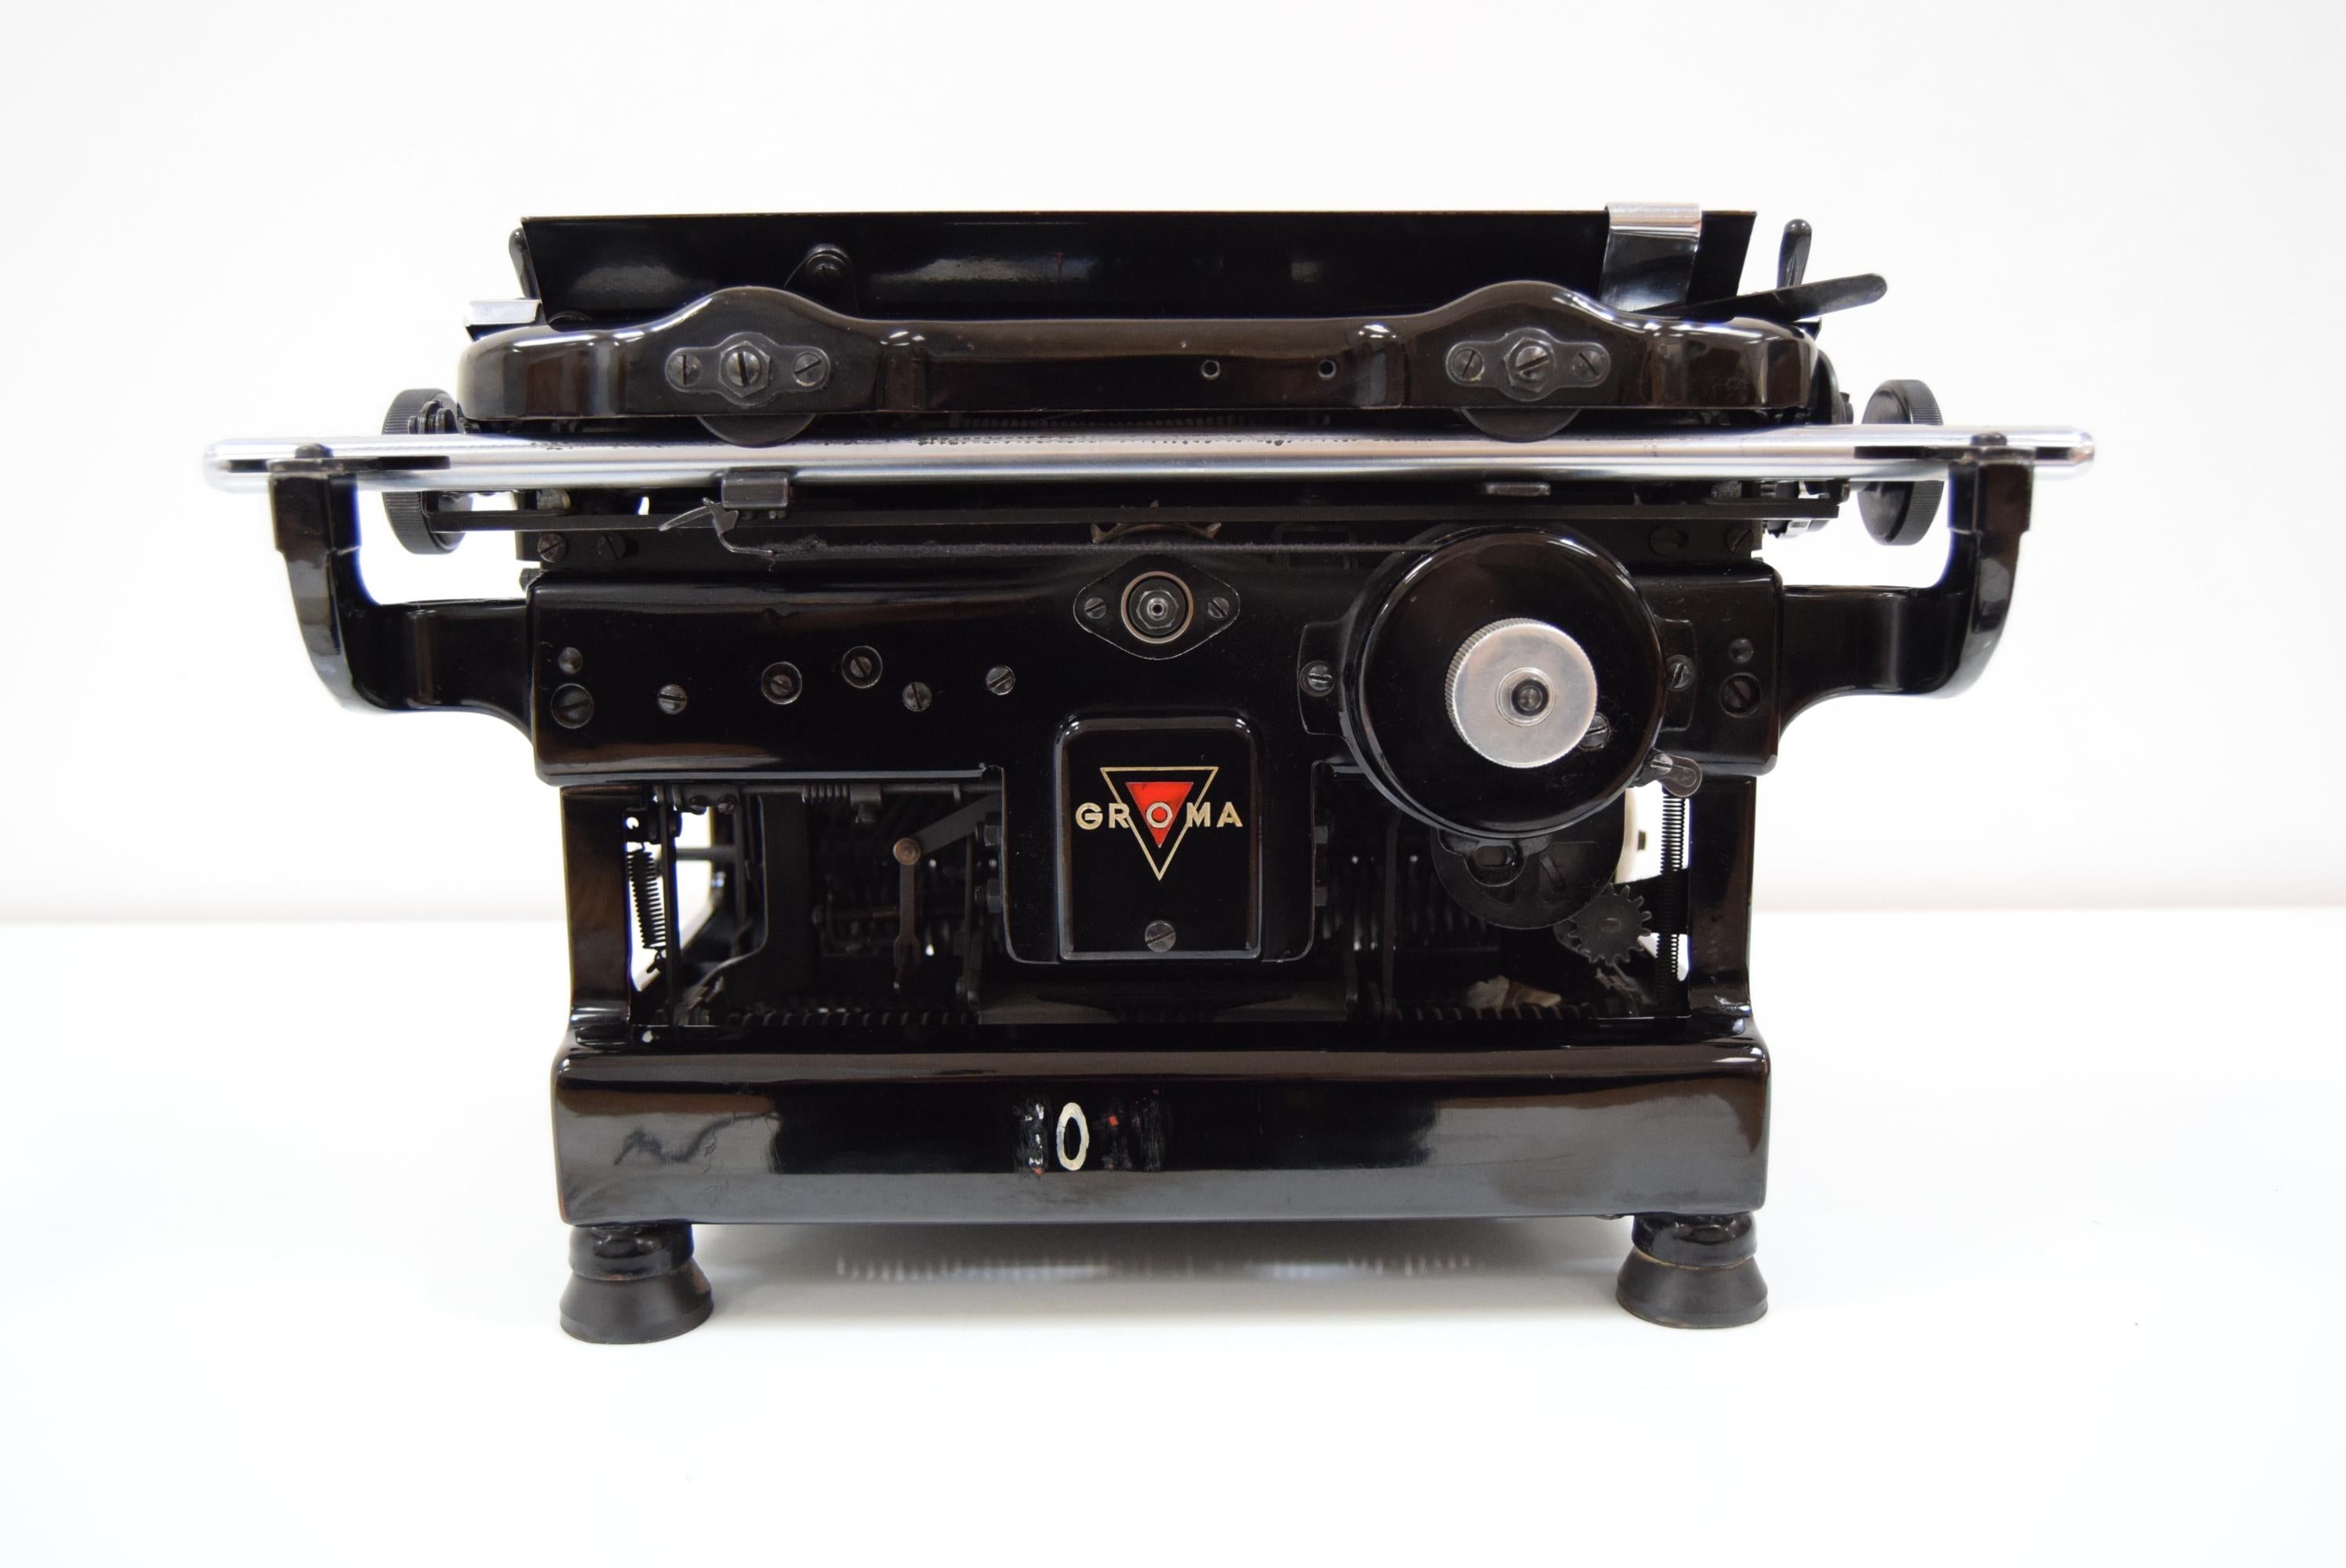 Metal Art Deco Typewriter/Groma, circa 1935